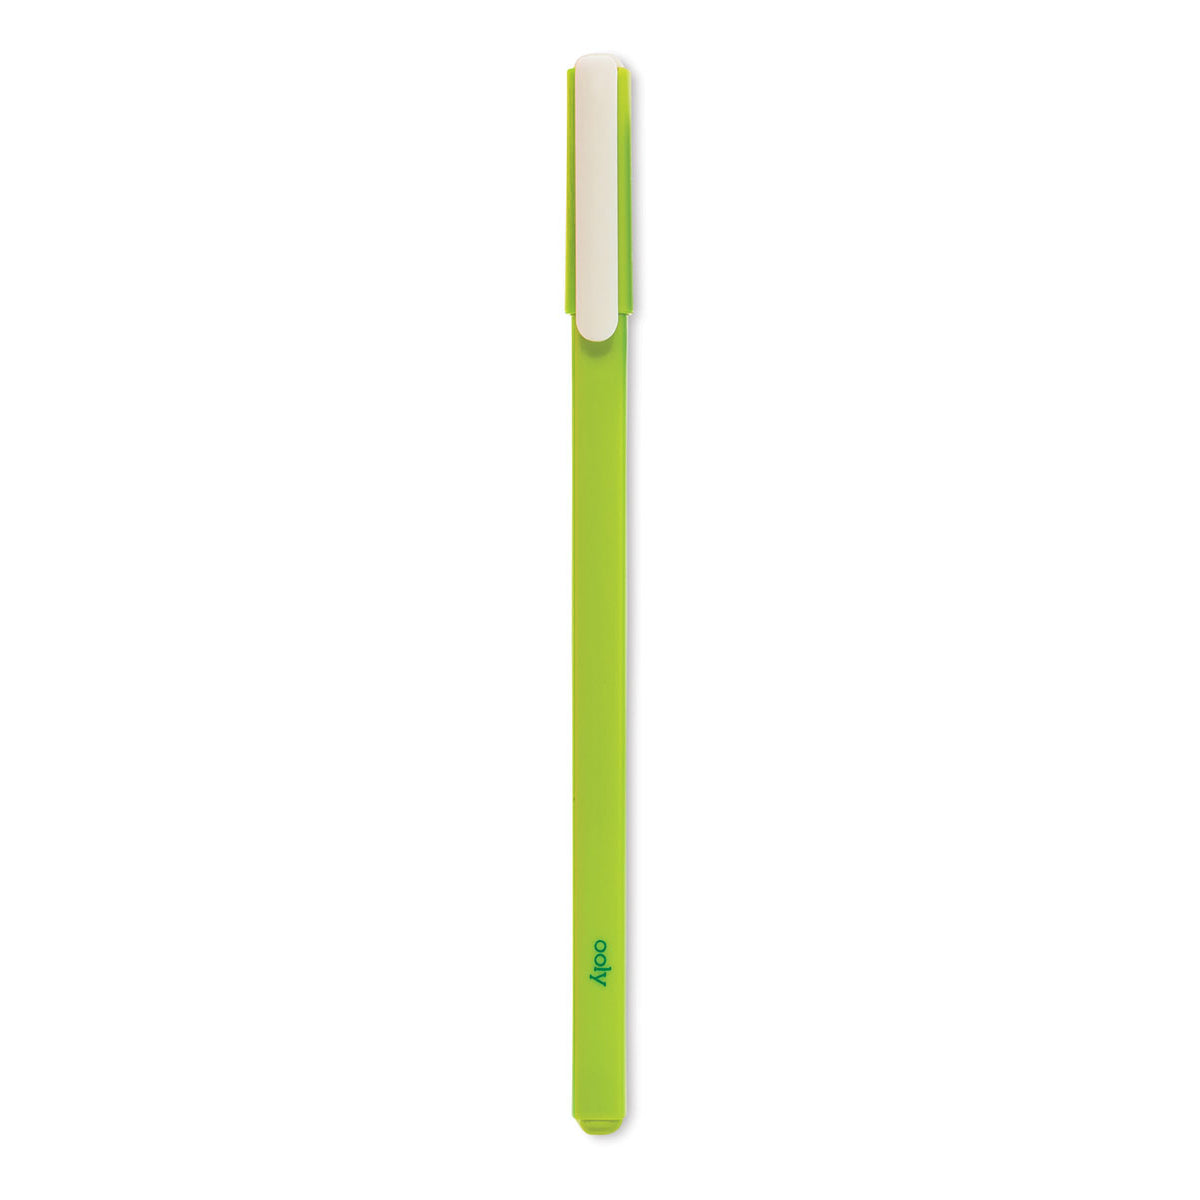 Ooly Fine Line Gel Pens - Green by Ooly - K. A. Artist Shop